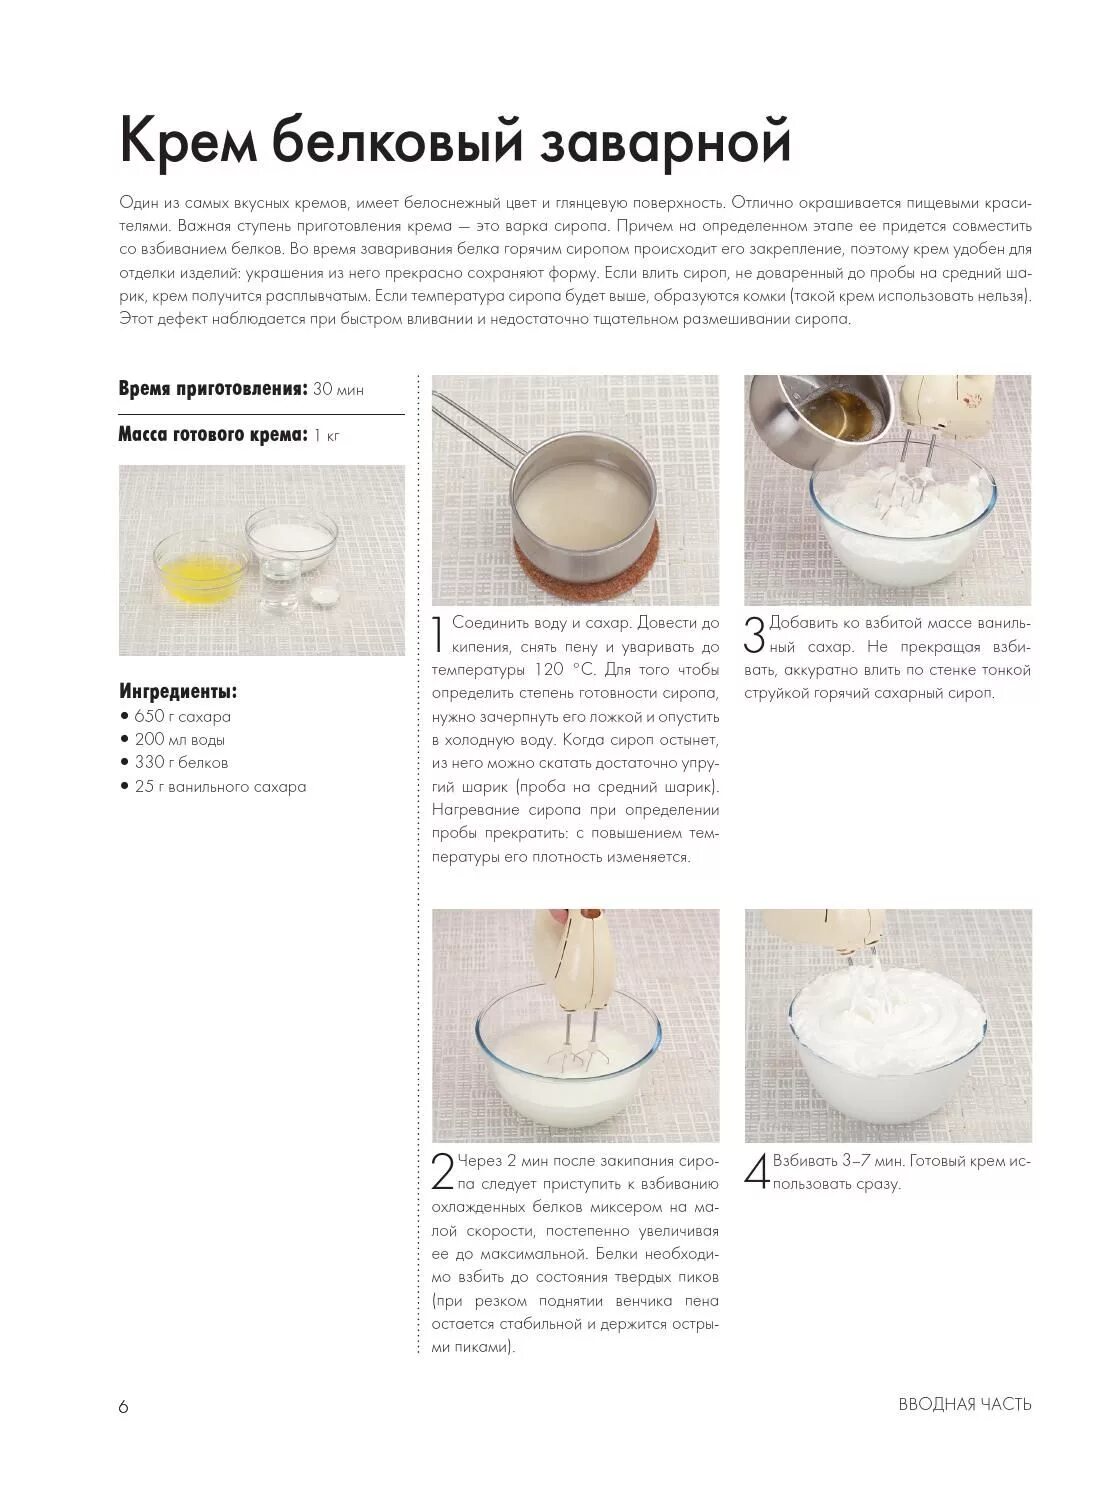 Рецепт крема для торта. Рецептура крема белкового заварного. Рецепты кремов для тортов. Рецэптбелкового крема. Рецепты белковый крем пошагово